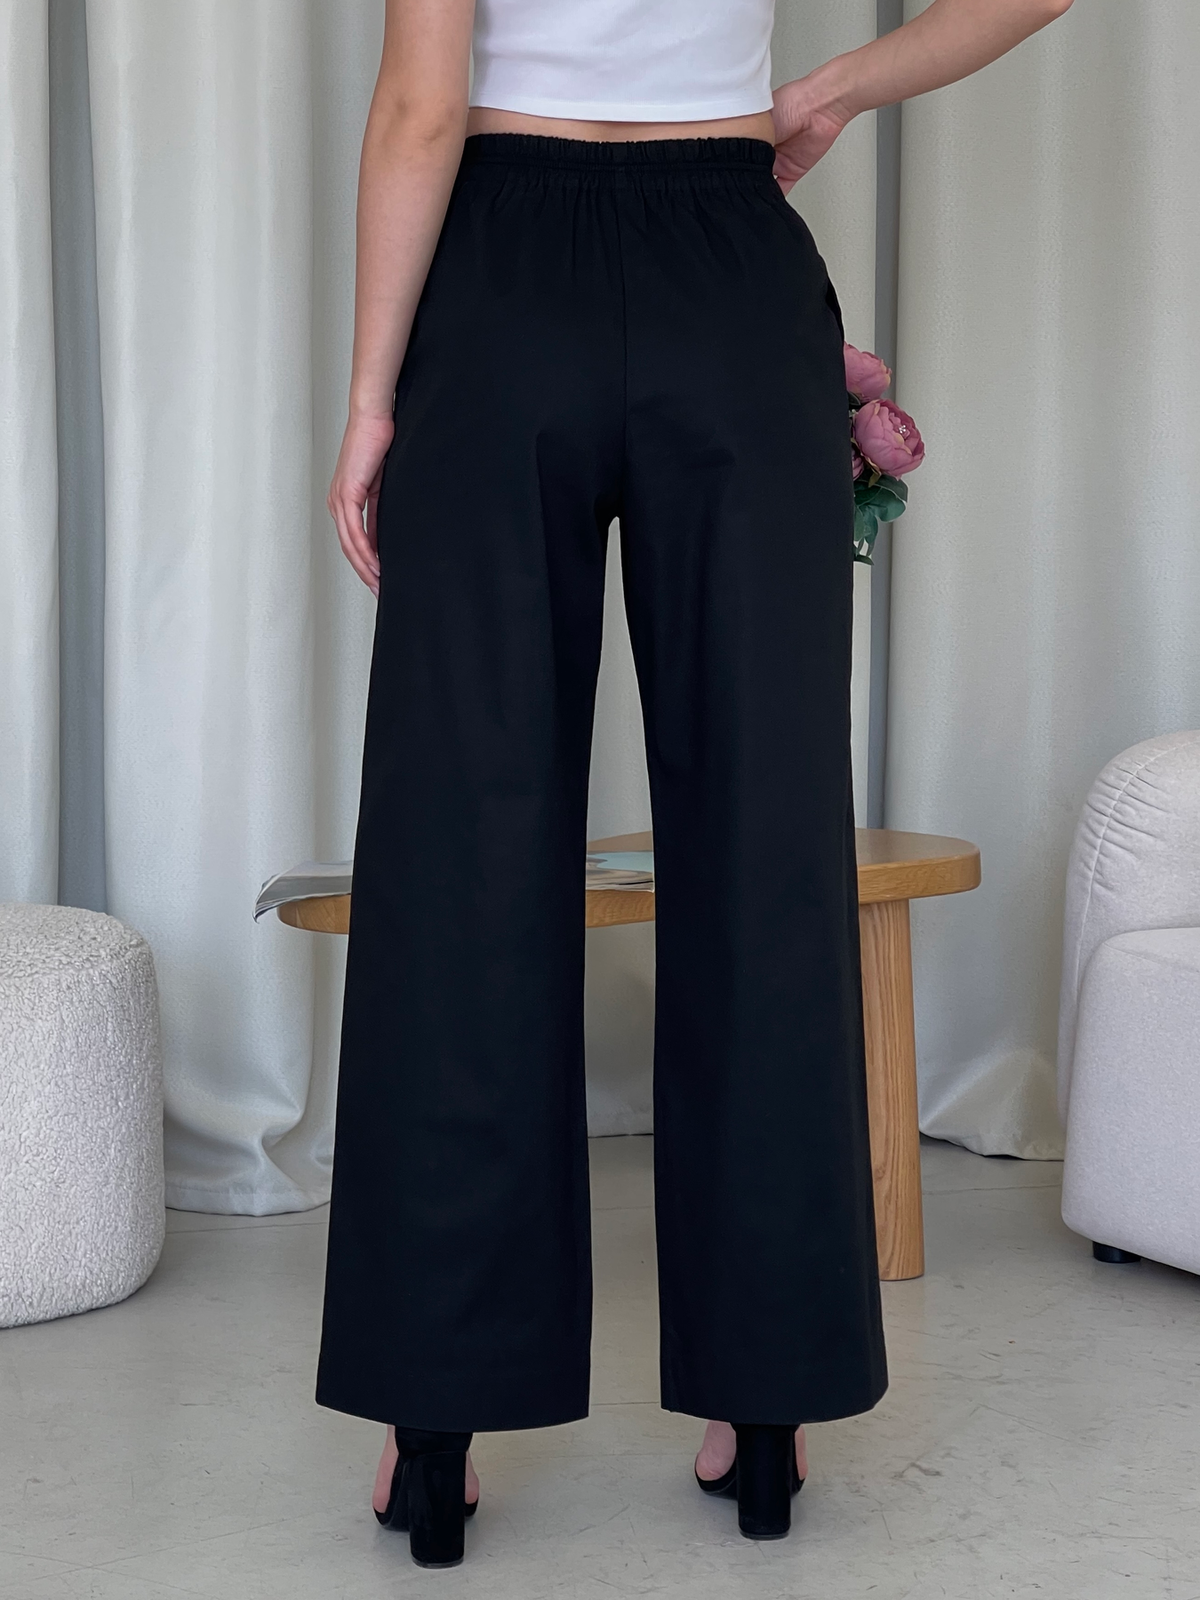 Льняные штаны палаццо черные Merlini Торио 600001201 размер 42-44 (S-M)